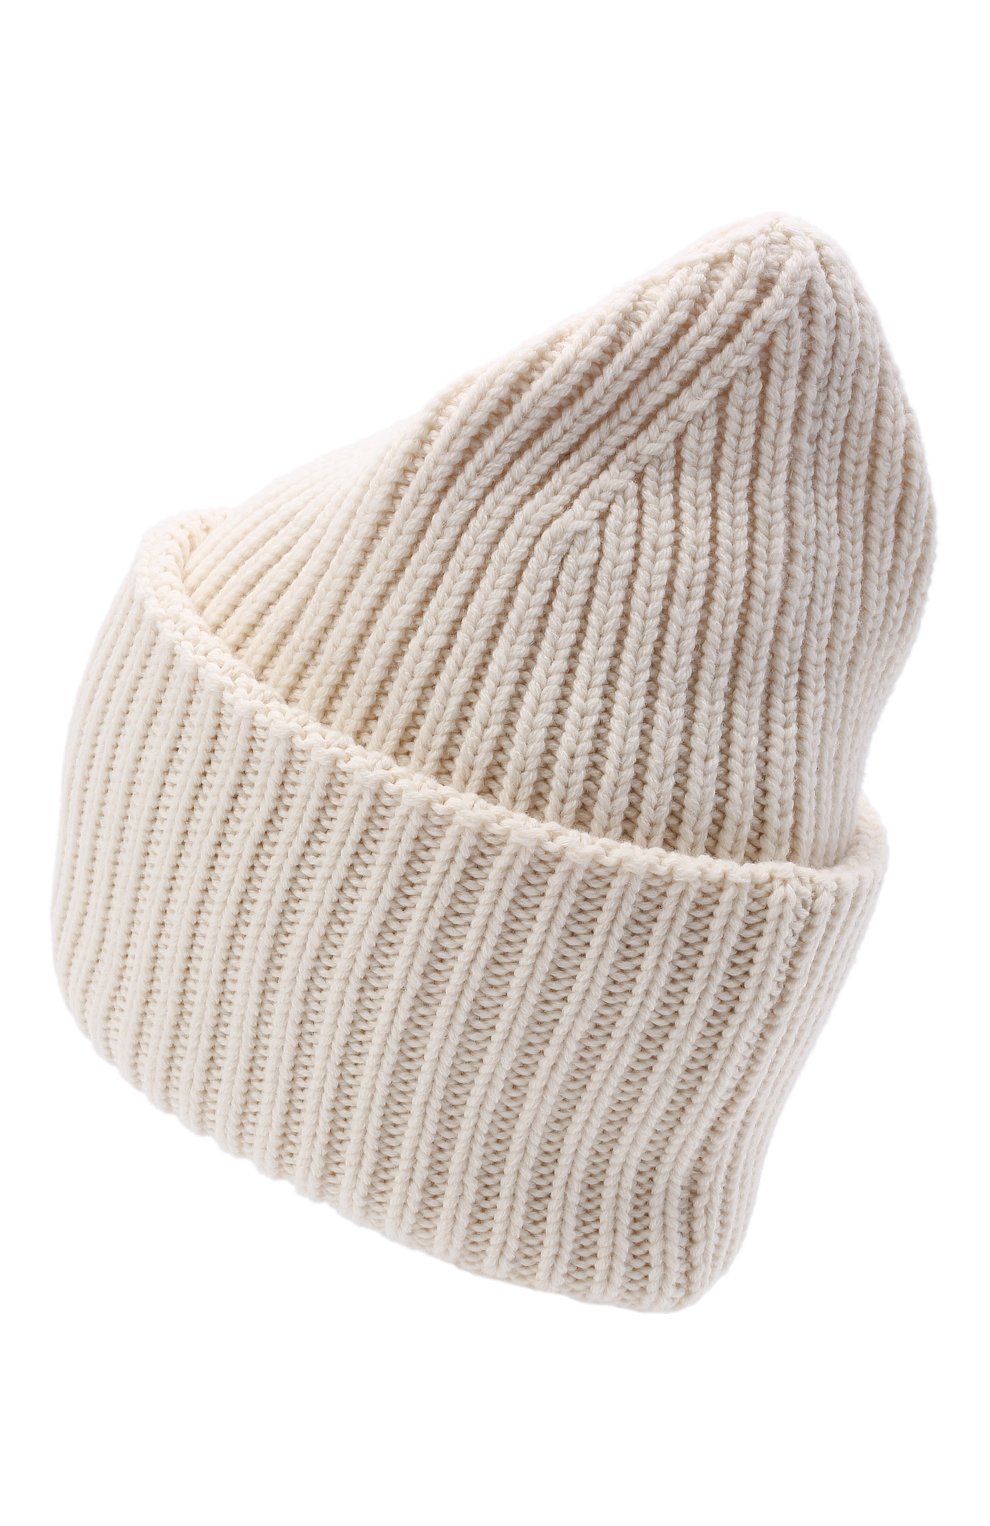 Женская шапка из шерсти и кашемира MONCLER белого цвета, арт. G2-093-3B000-03-M1127 | Фото 3 (Материал: Текстиль, Кашемир, Шерсть)